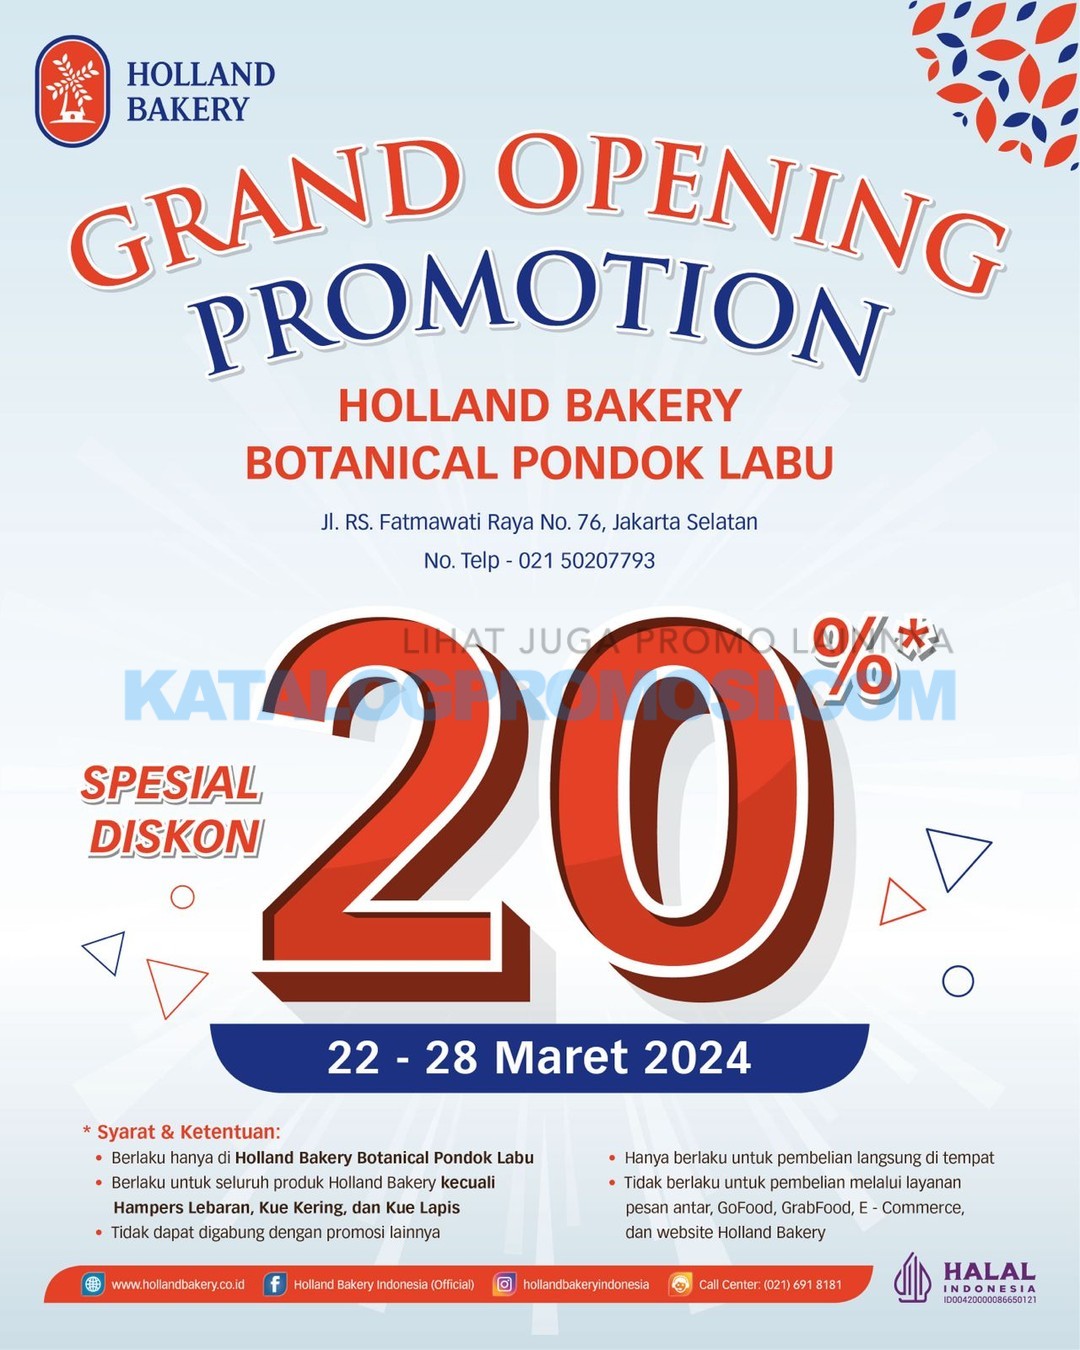 PROMO GRANG OPENING Holland Bakery Botanical Pondok Labu - DISKON 20% mulai tanggal 22 s/d 28 Maret 2024.